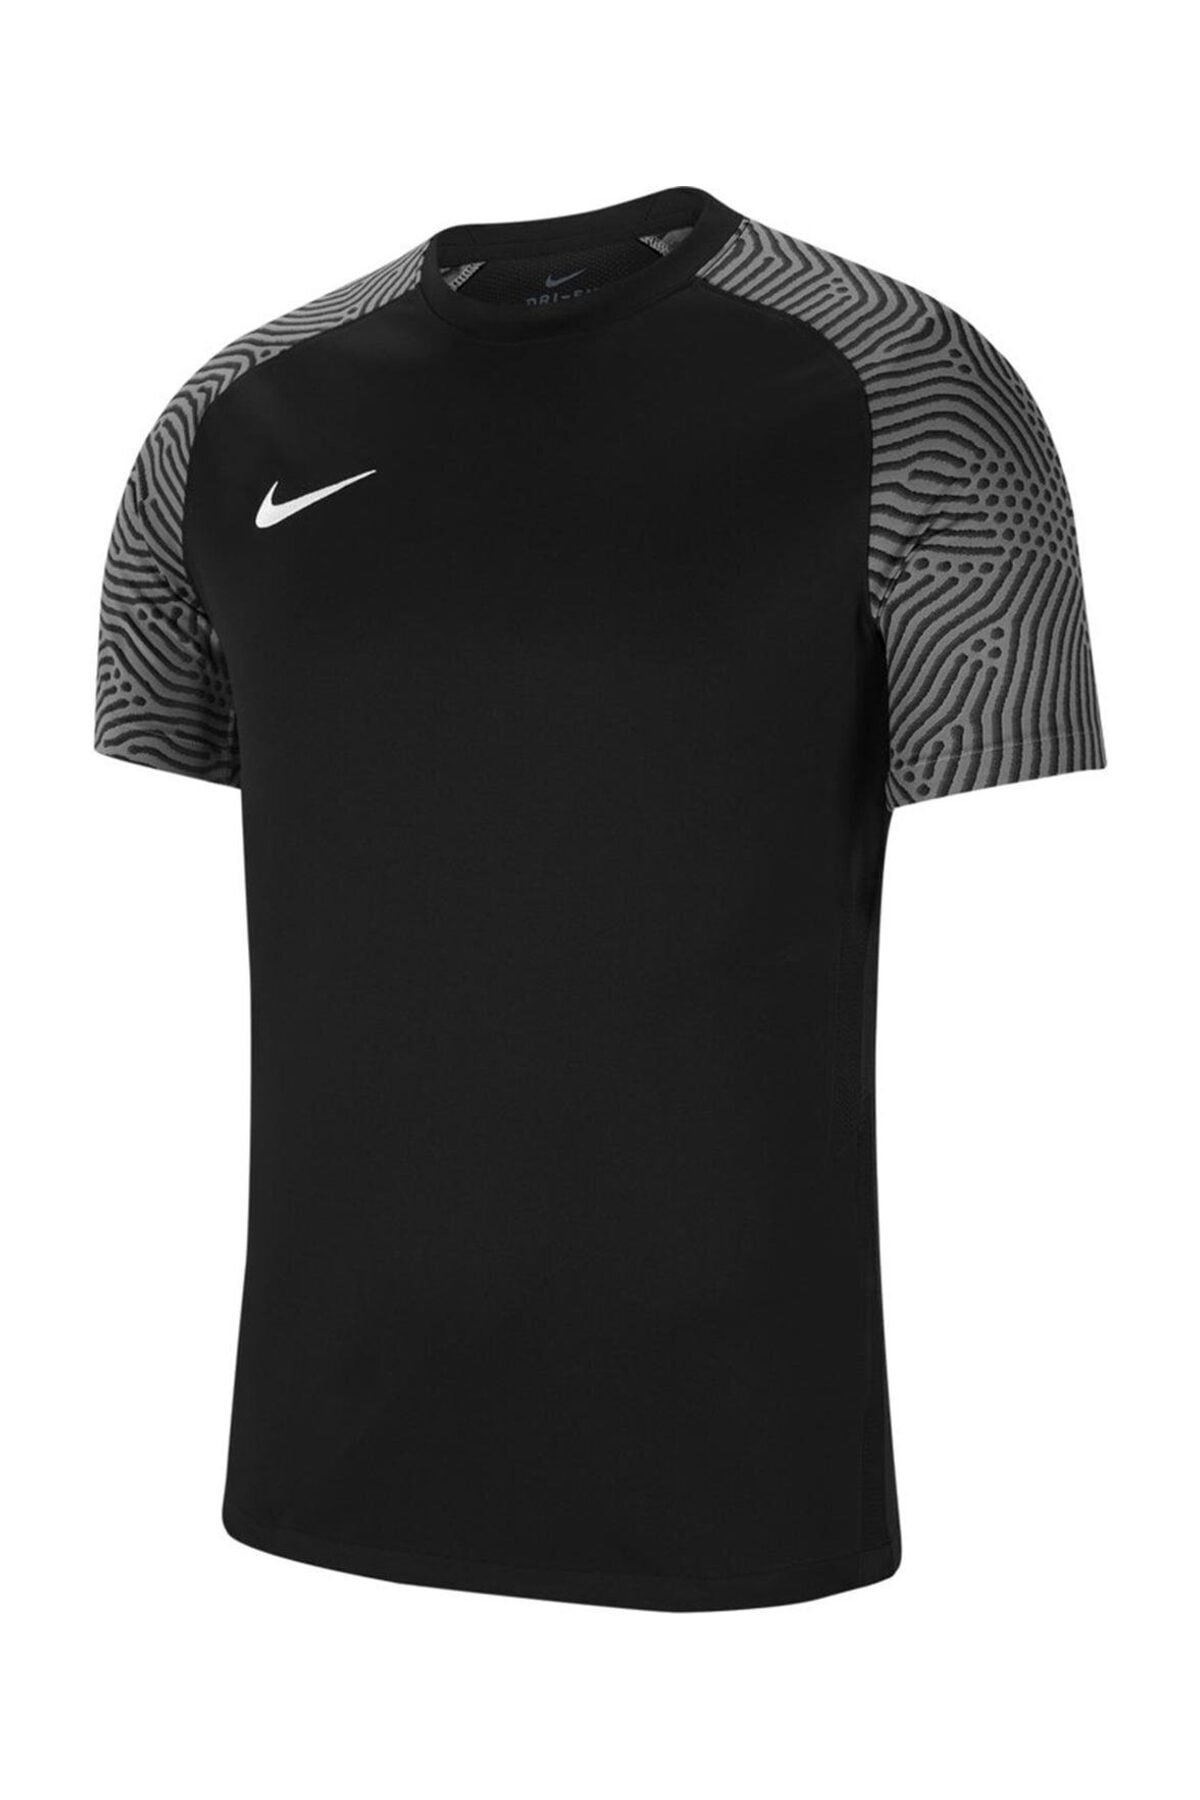 Nike Erkek Spor T-Shirt - DF STRKE II JSY SS - CW3544-010